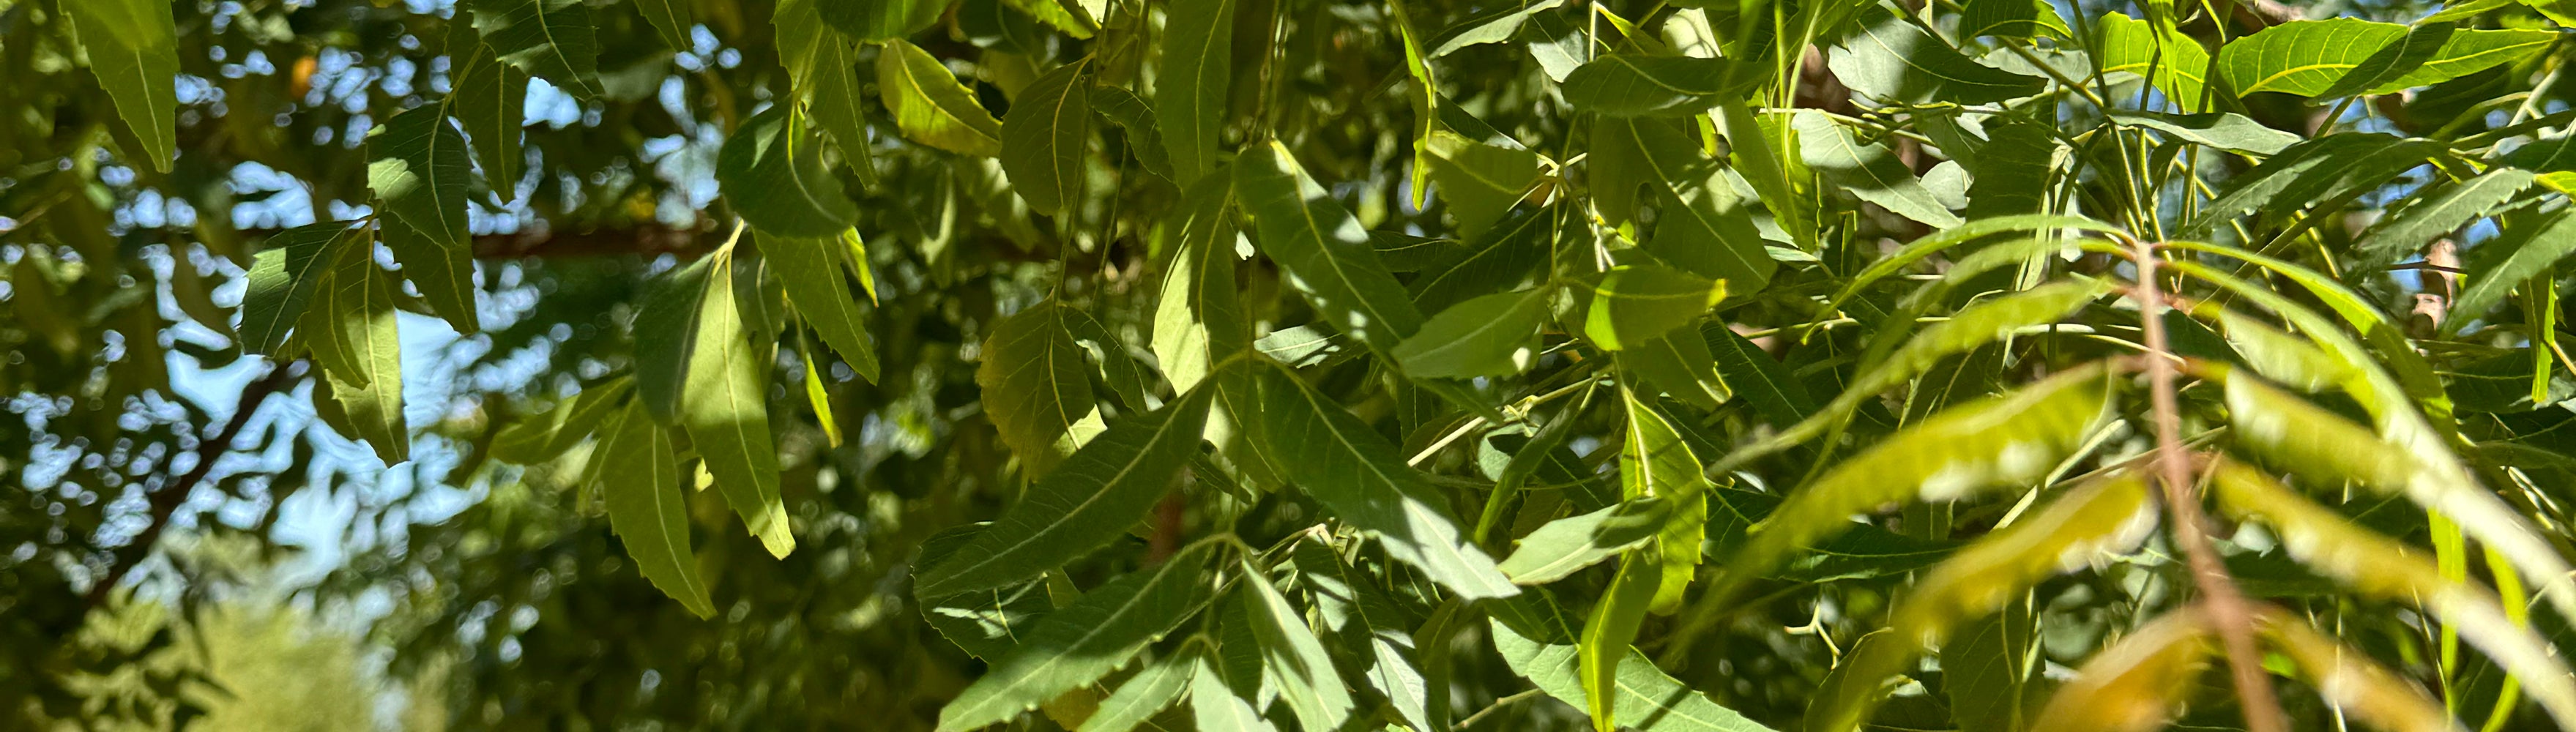 Zu sehen ist eine Nahaufnahme der Neem-Pflanze inklusive grüner Blätter.